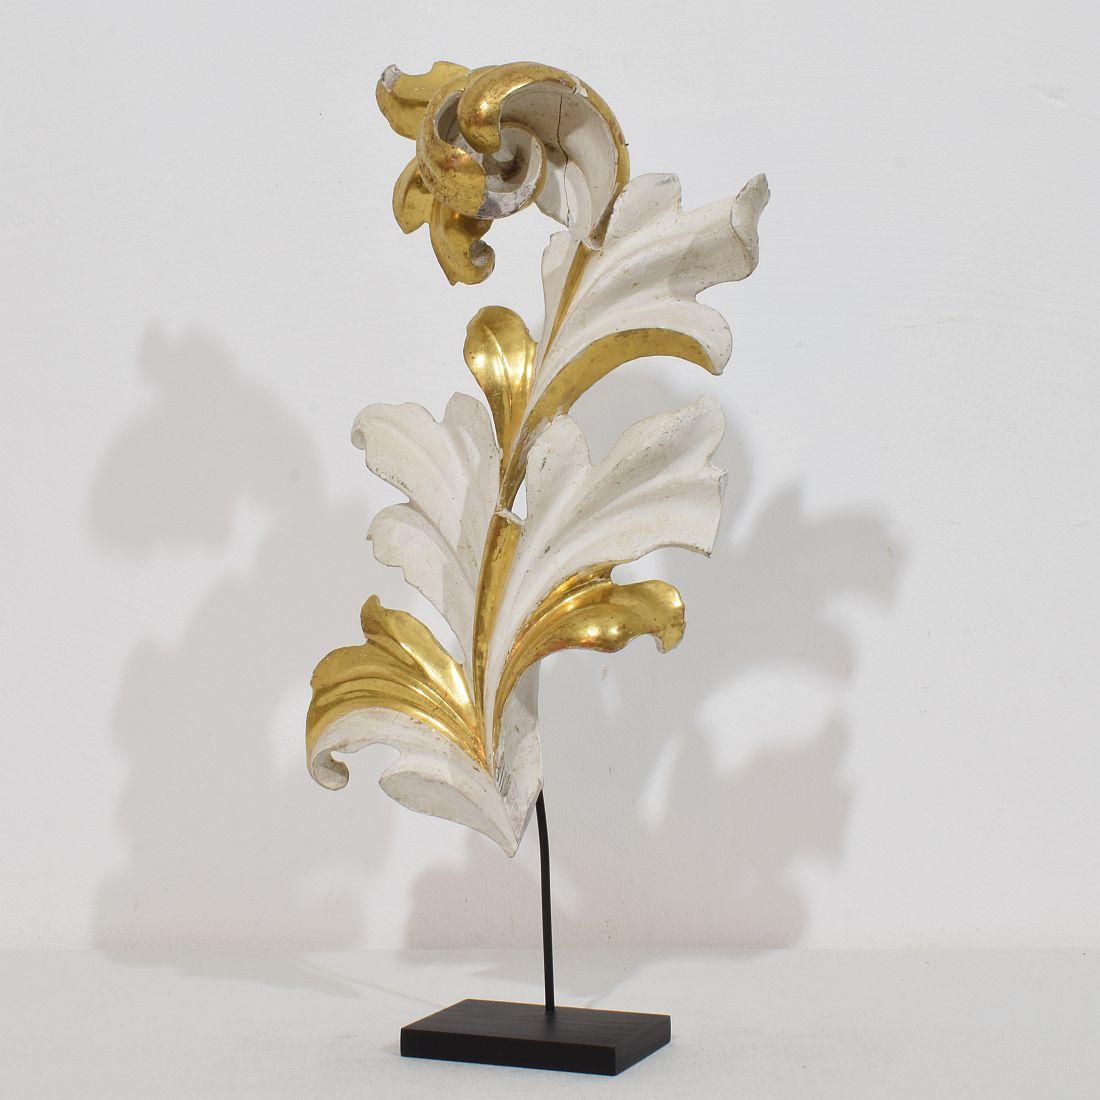 
Wunderschönes handgeschnitztes Akanthusblatt-Ornament aus Goldholz, das einst eine Kapelle schmückte, und das aufgrund seines hohen Alters ein schönes verwittertes Aussehen hat.
Italien um 1780/1850 , verwittert, kleine Schäden und alte